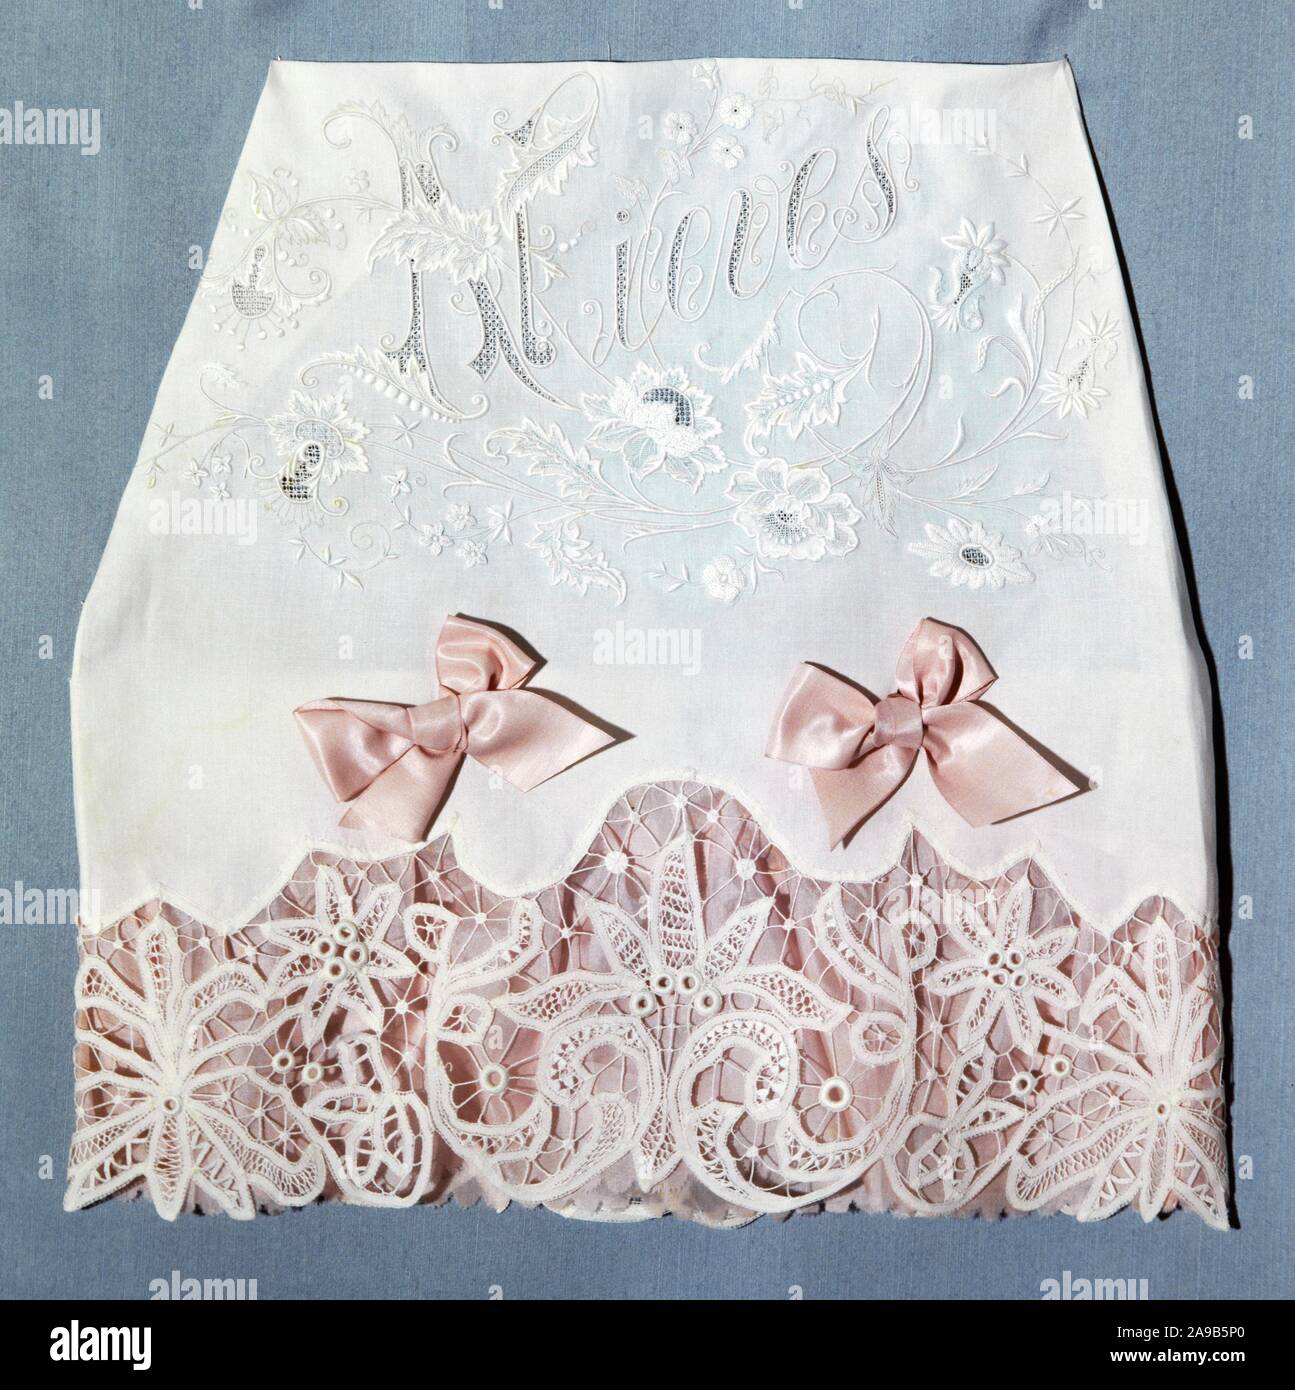 Juego de cama. Lino de color blanco con cinta de seda de color rosa. Bordad ode color blanco. Barcelona, hacia 1900. Stock Photo